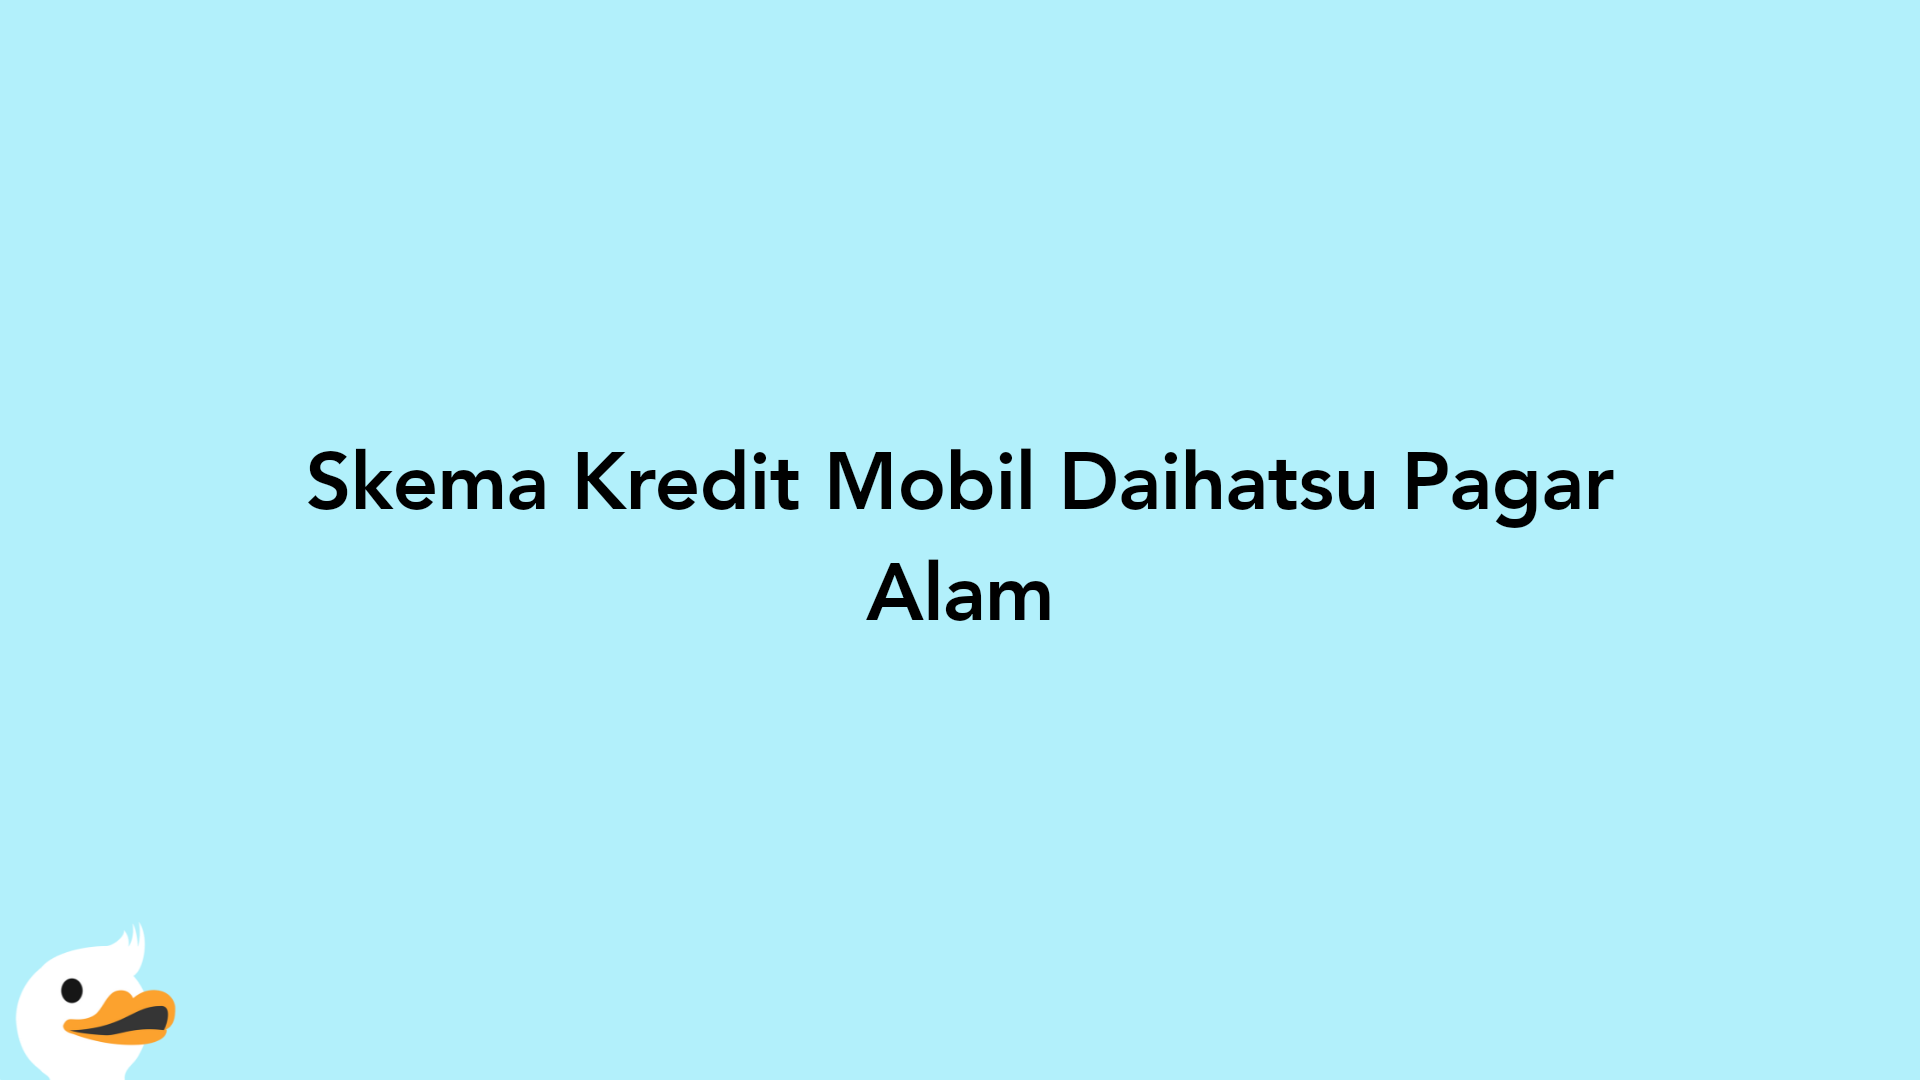 Skema Kredit Mobil Daihatsu Pagar Alam